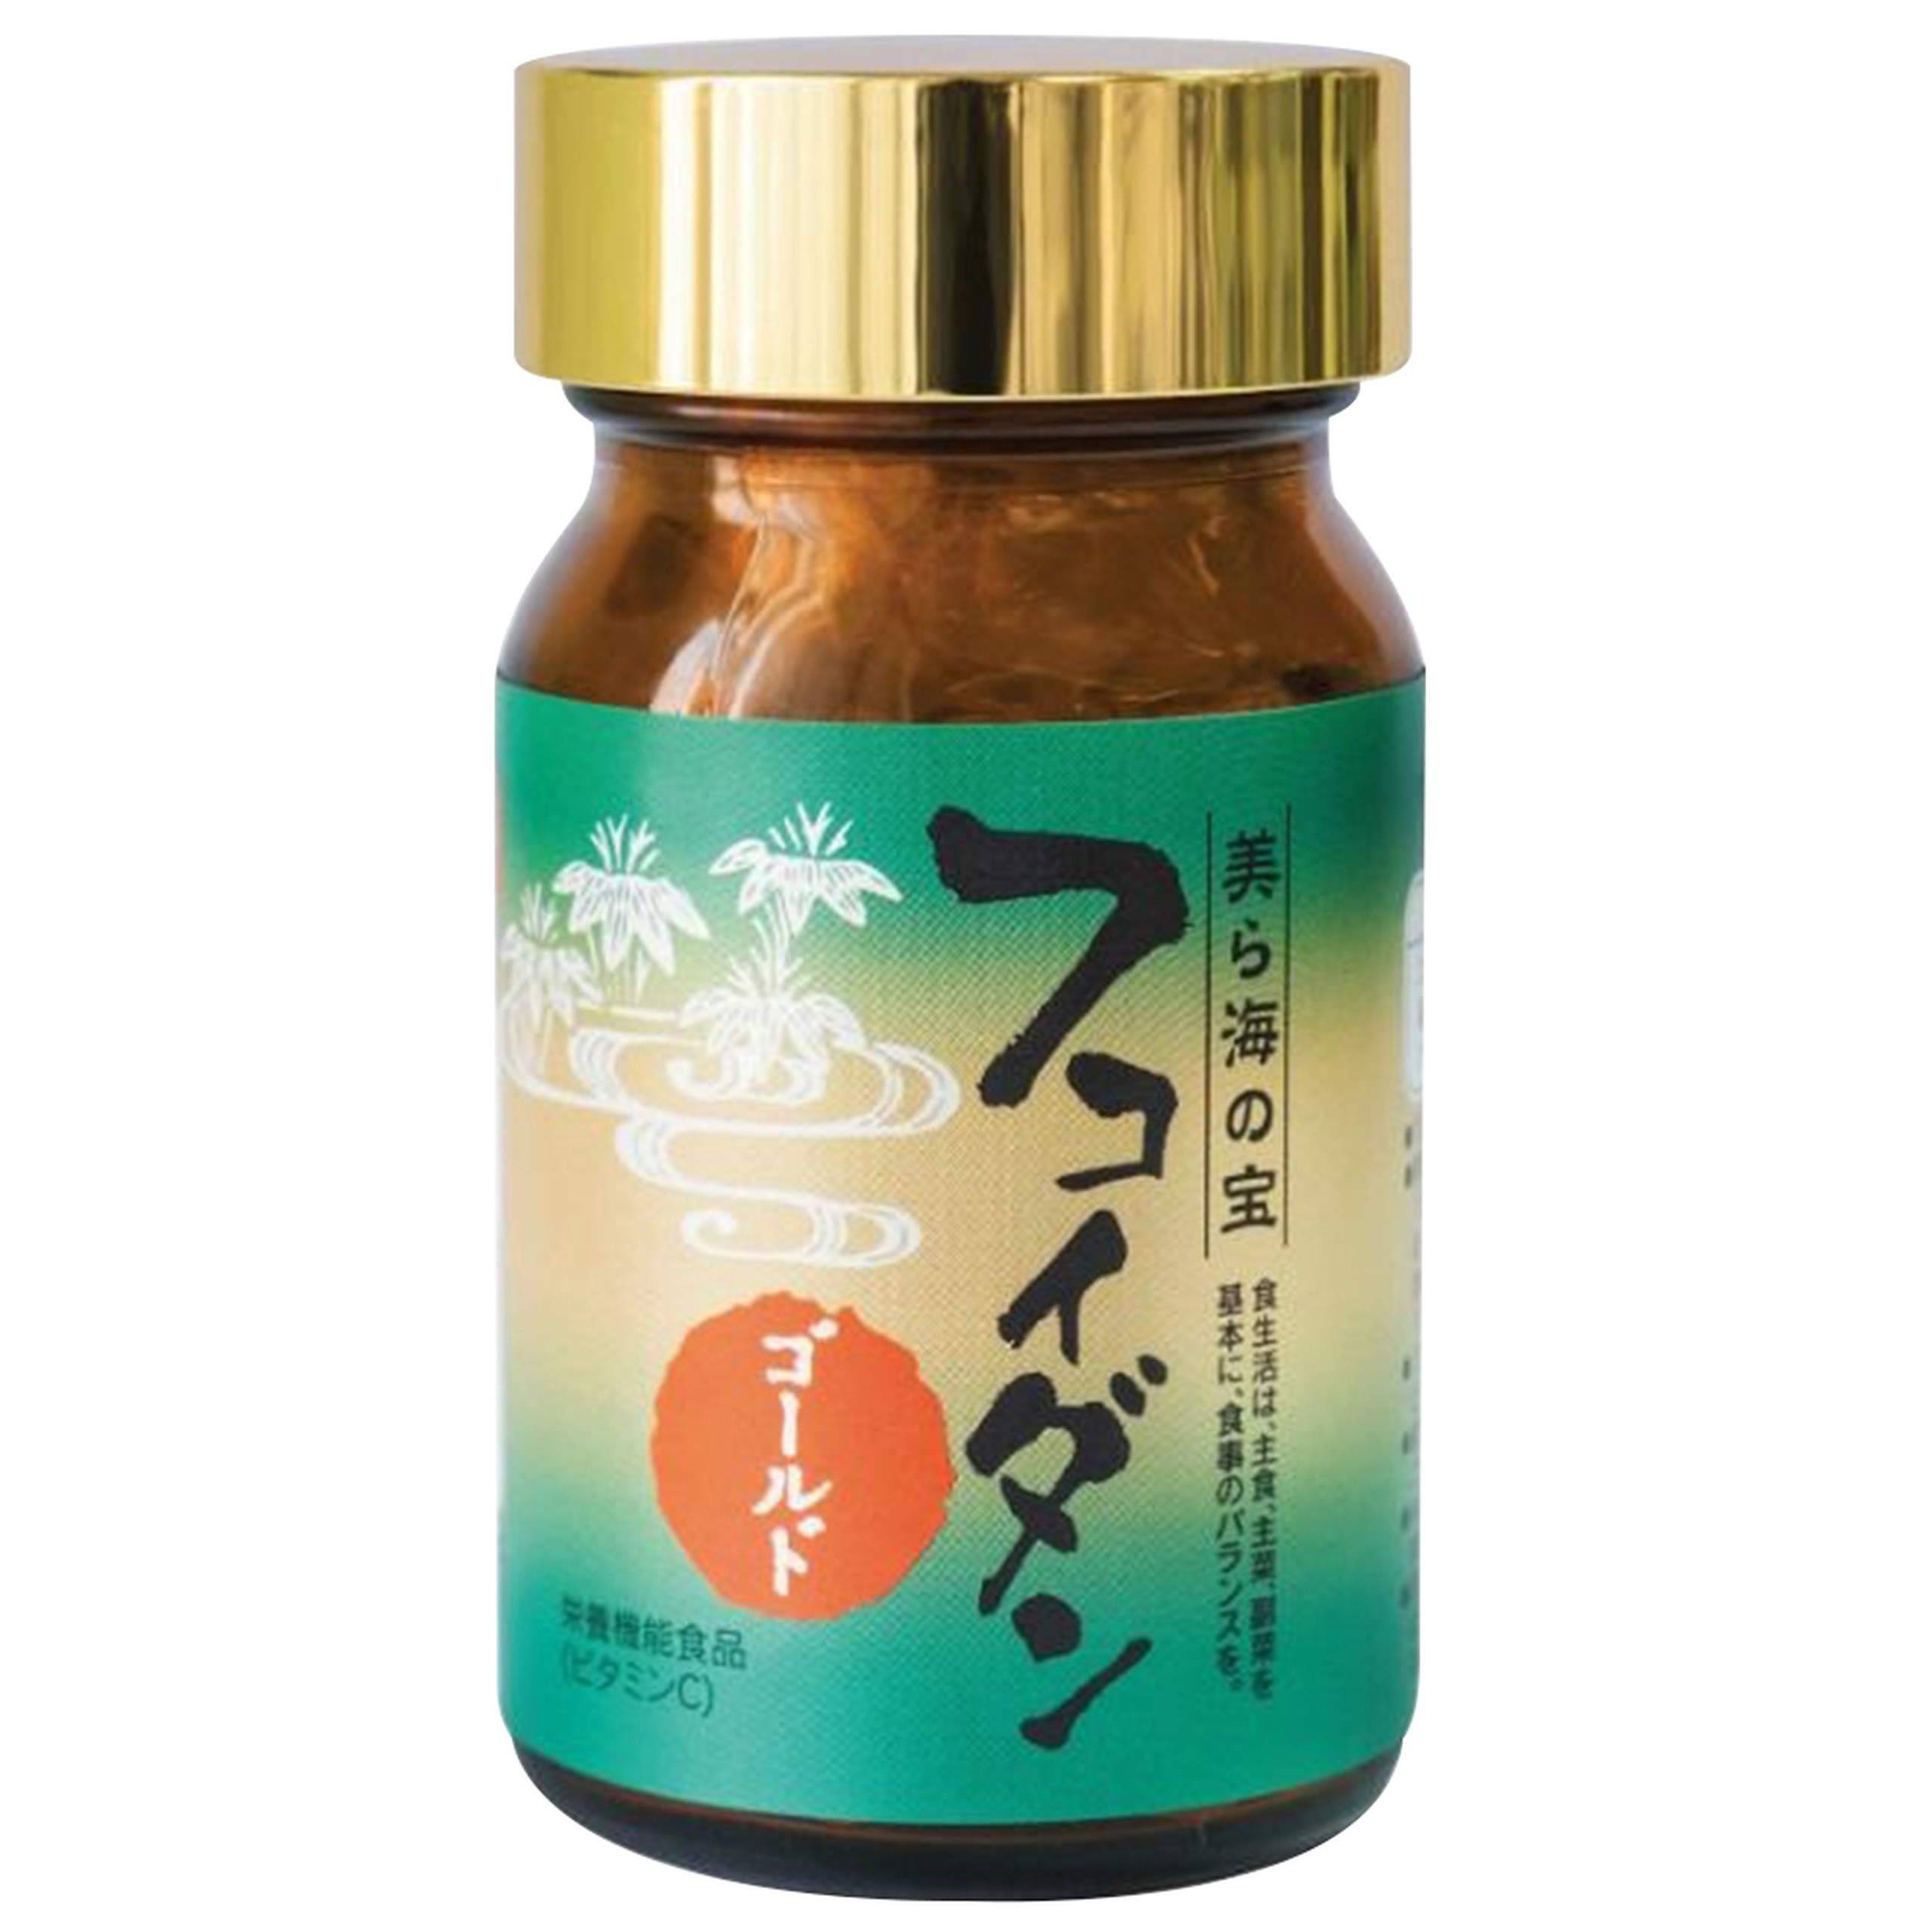 Viên uống Fucoidan Gold Okinawa Ukono chống oxy hóa, khử các gốc tự do, tăng cường sức đề kháng (180 viên)